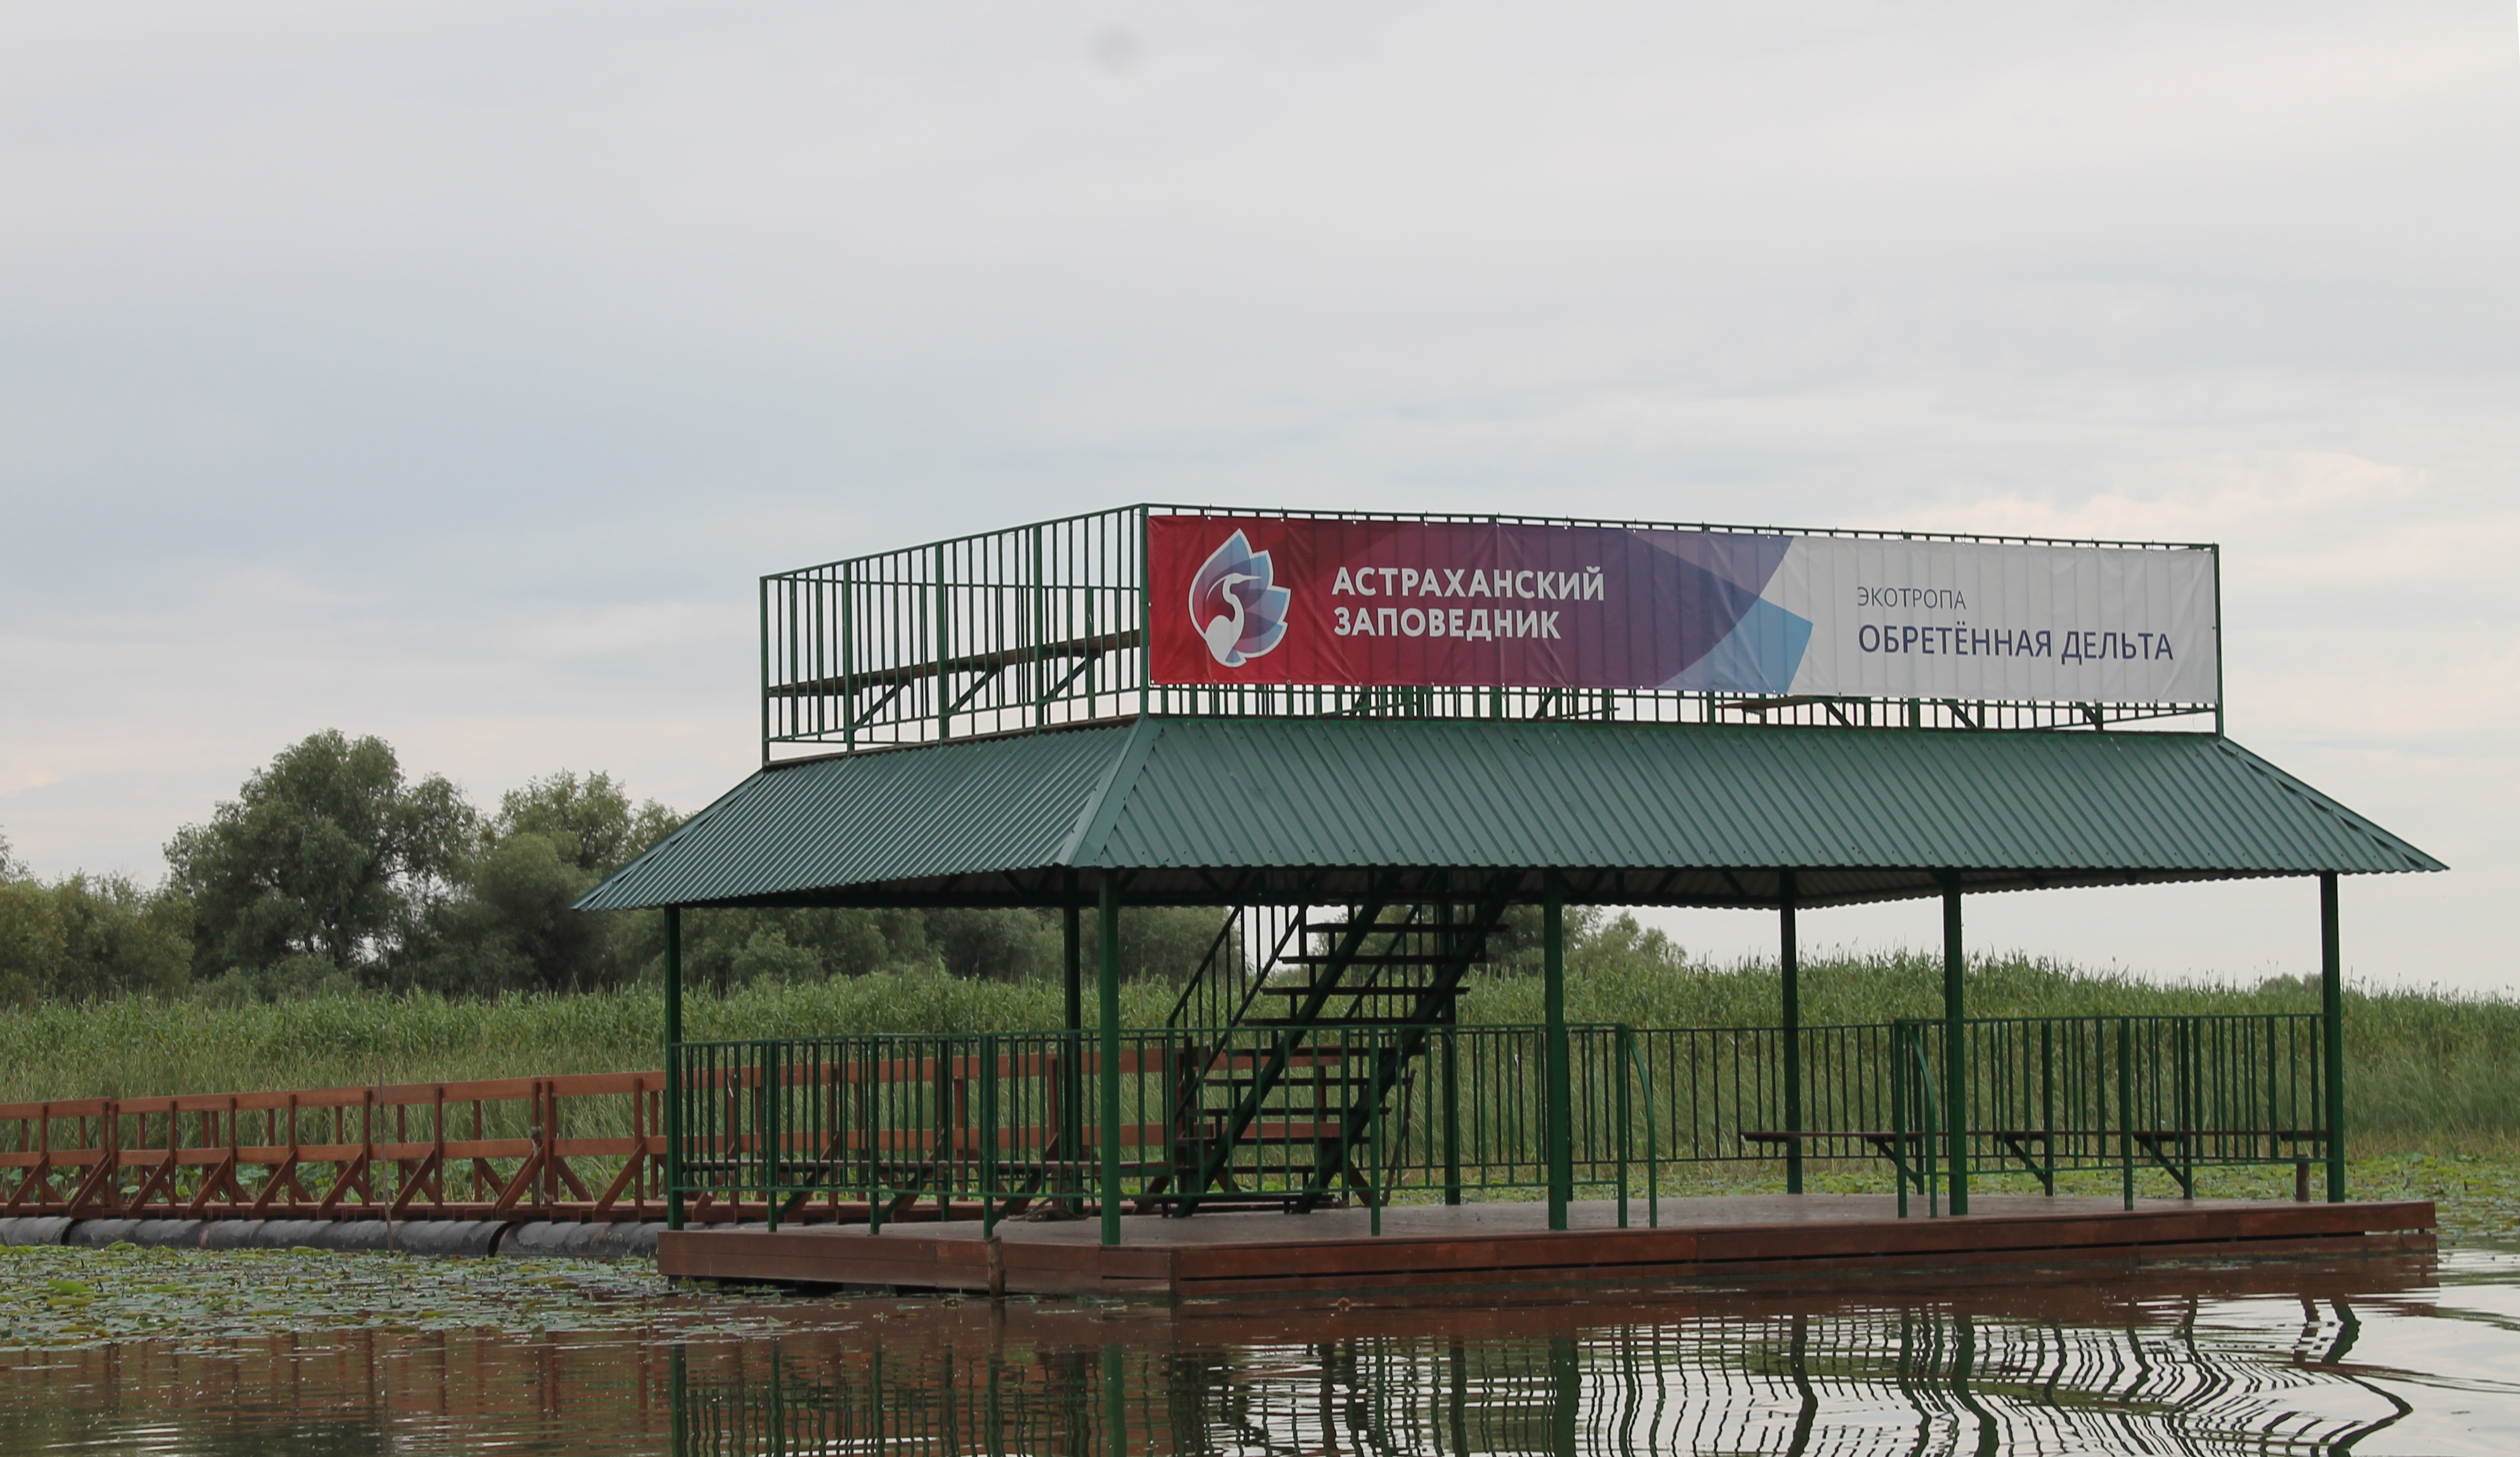 Астраханский биосферный резерват